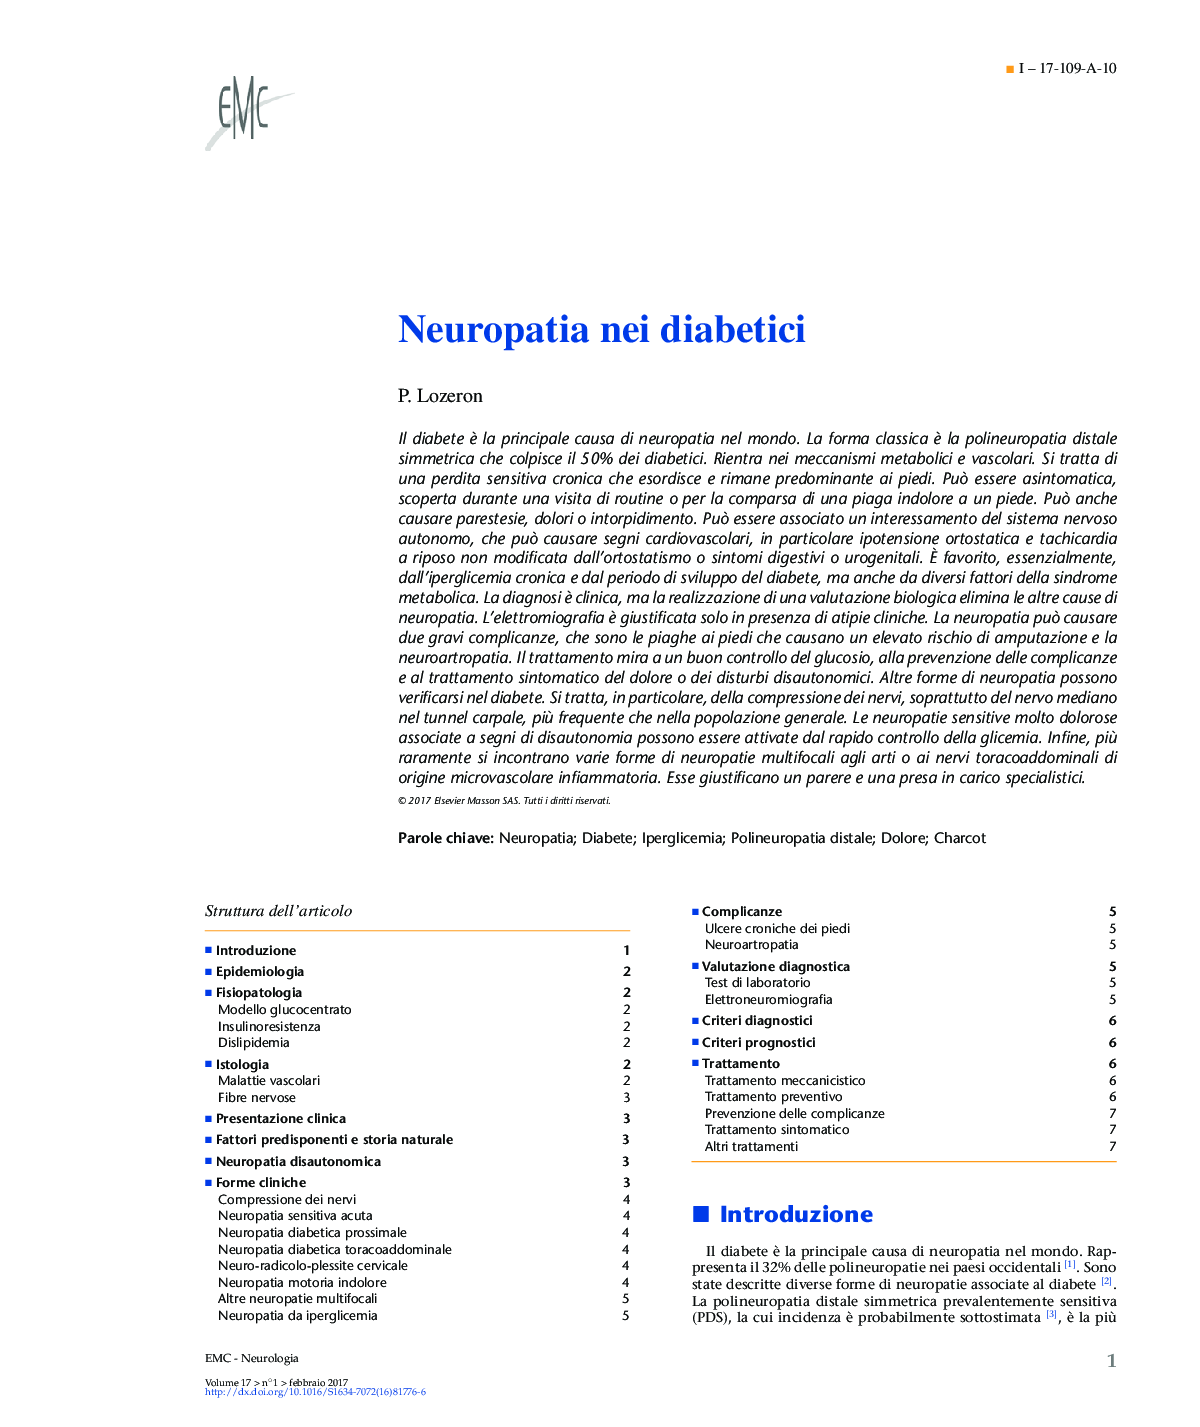 نوروپاتی در بیماران دیابتی 